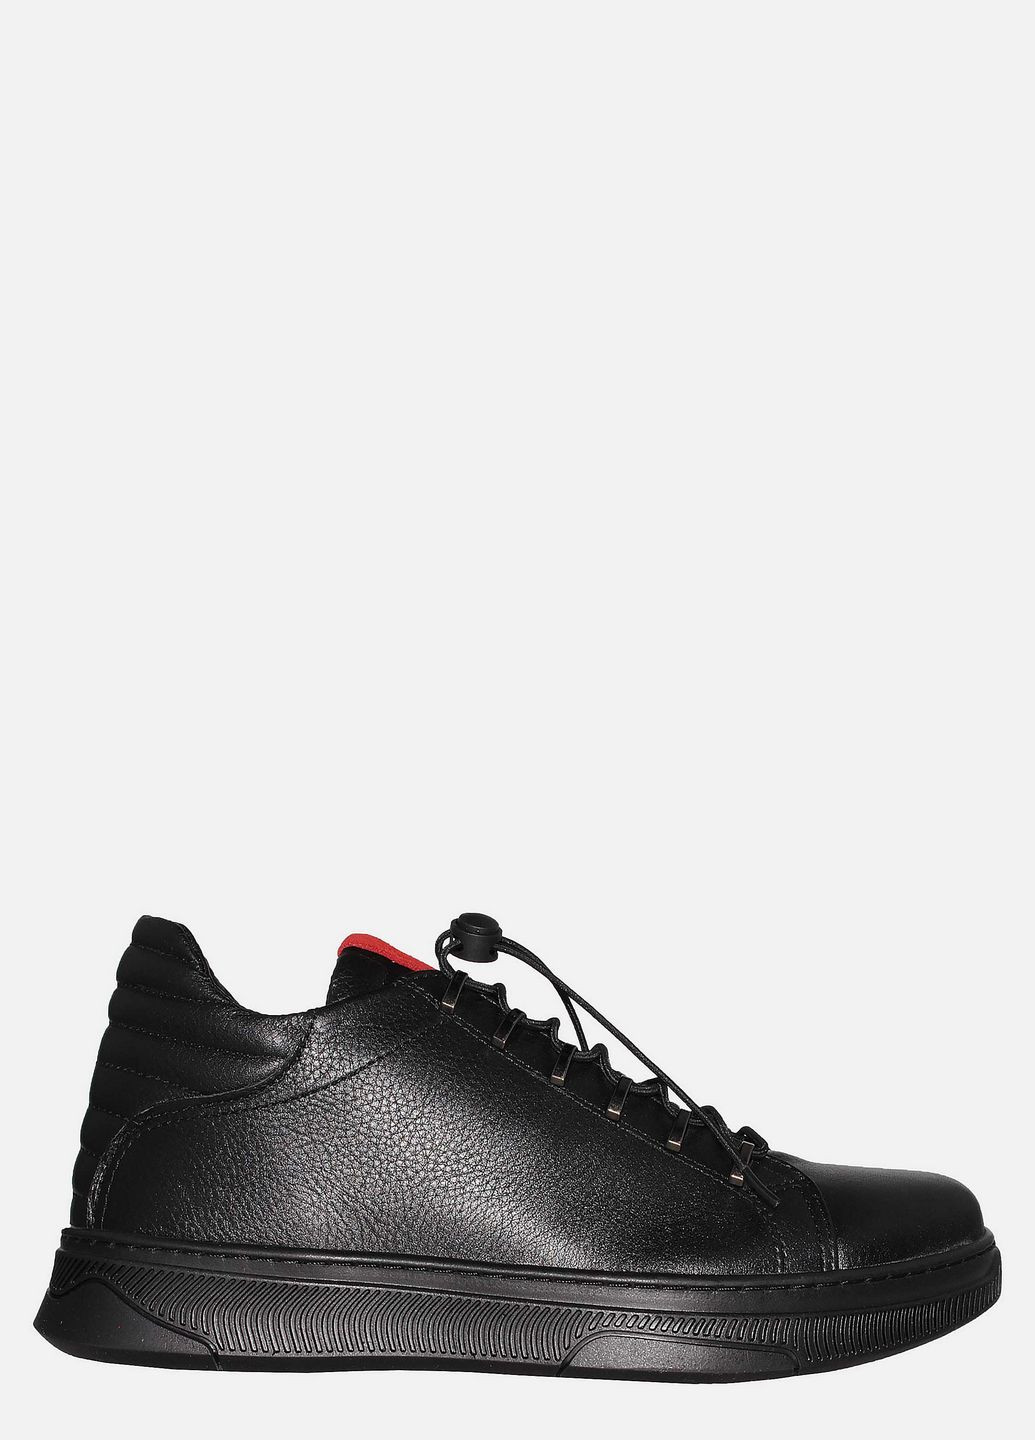 Черные осенние ботинки 720чл-чб черный-красный Fabiani